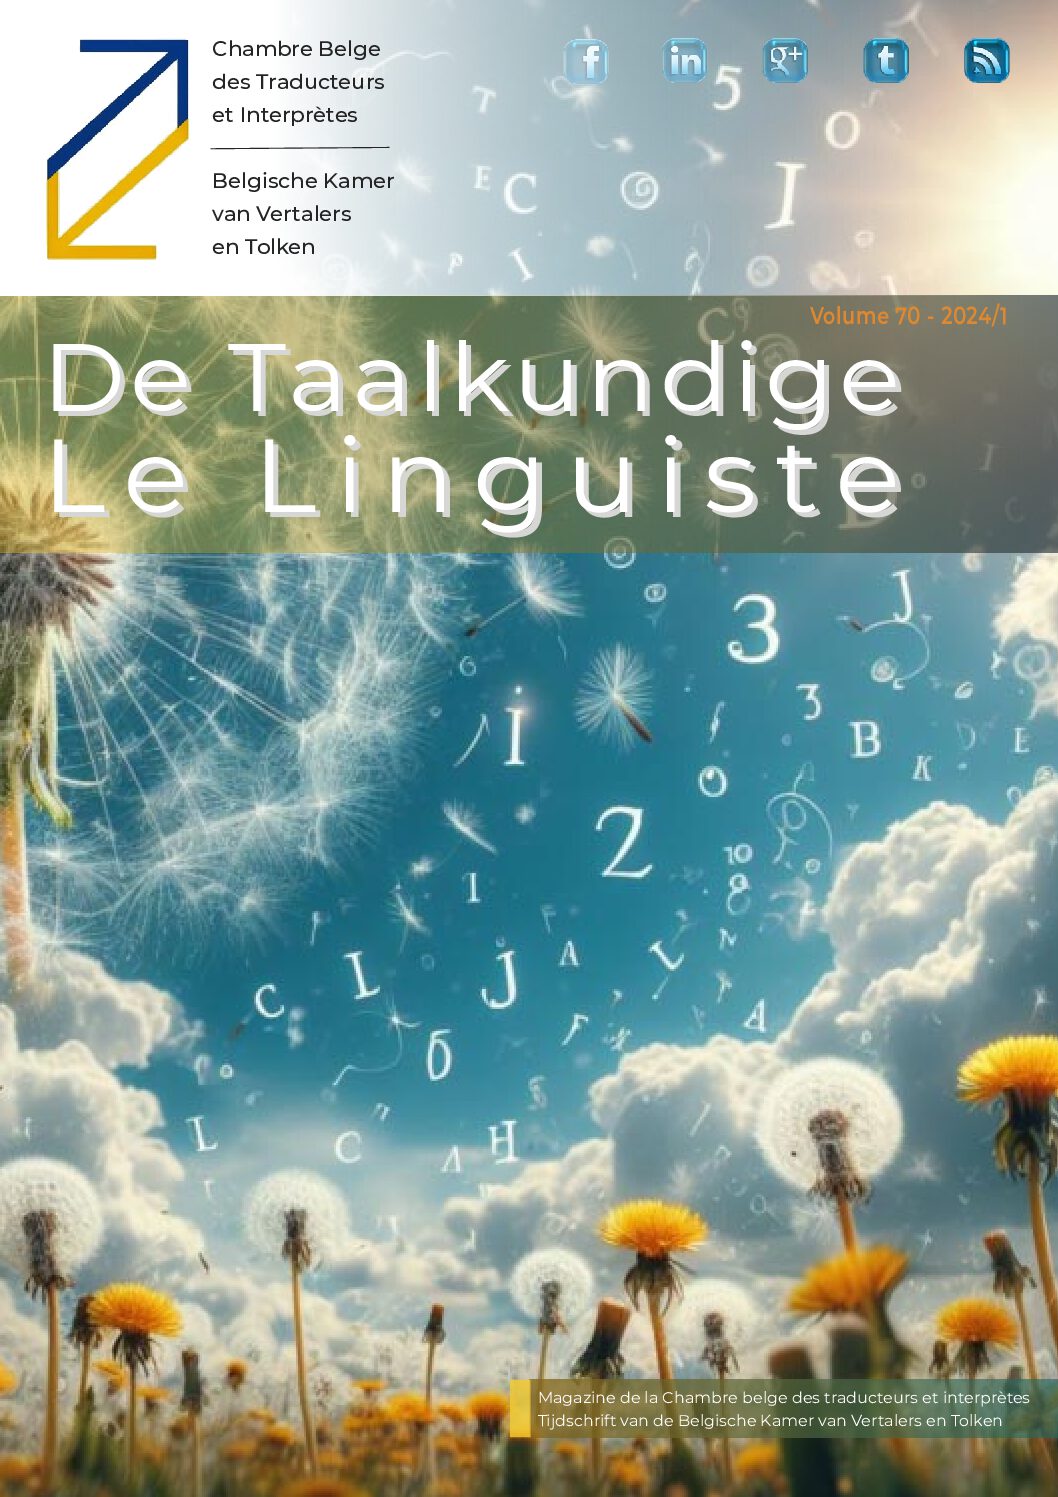 Image de présentation pour le document : De Taalkundige / Le Linguiste 2024-1